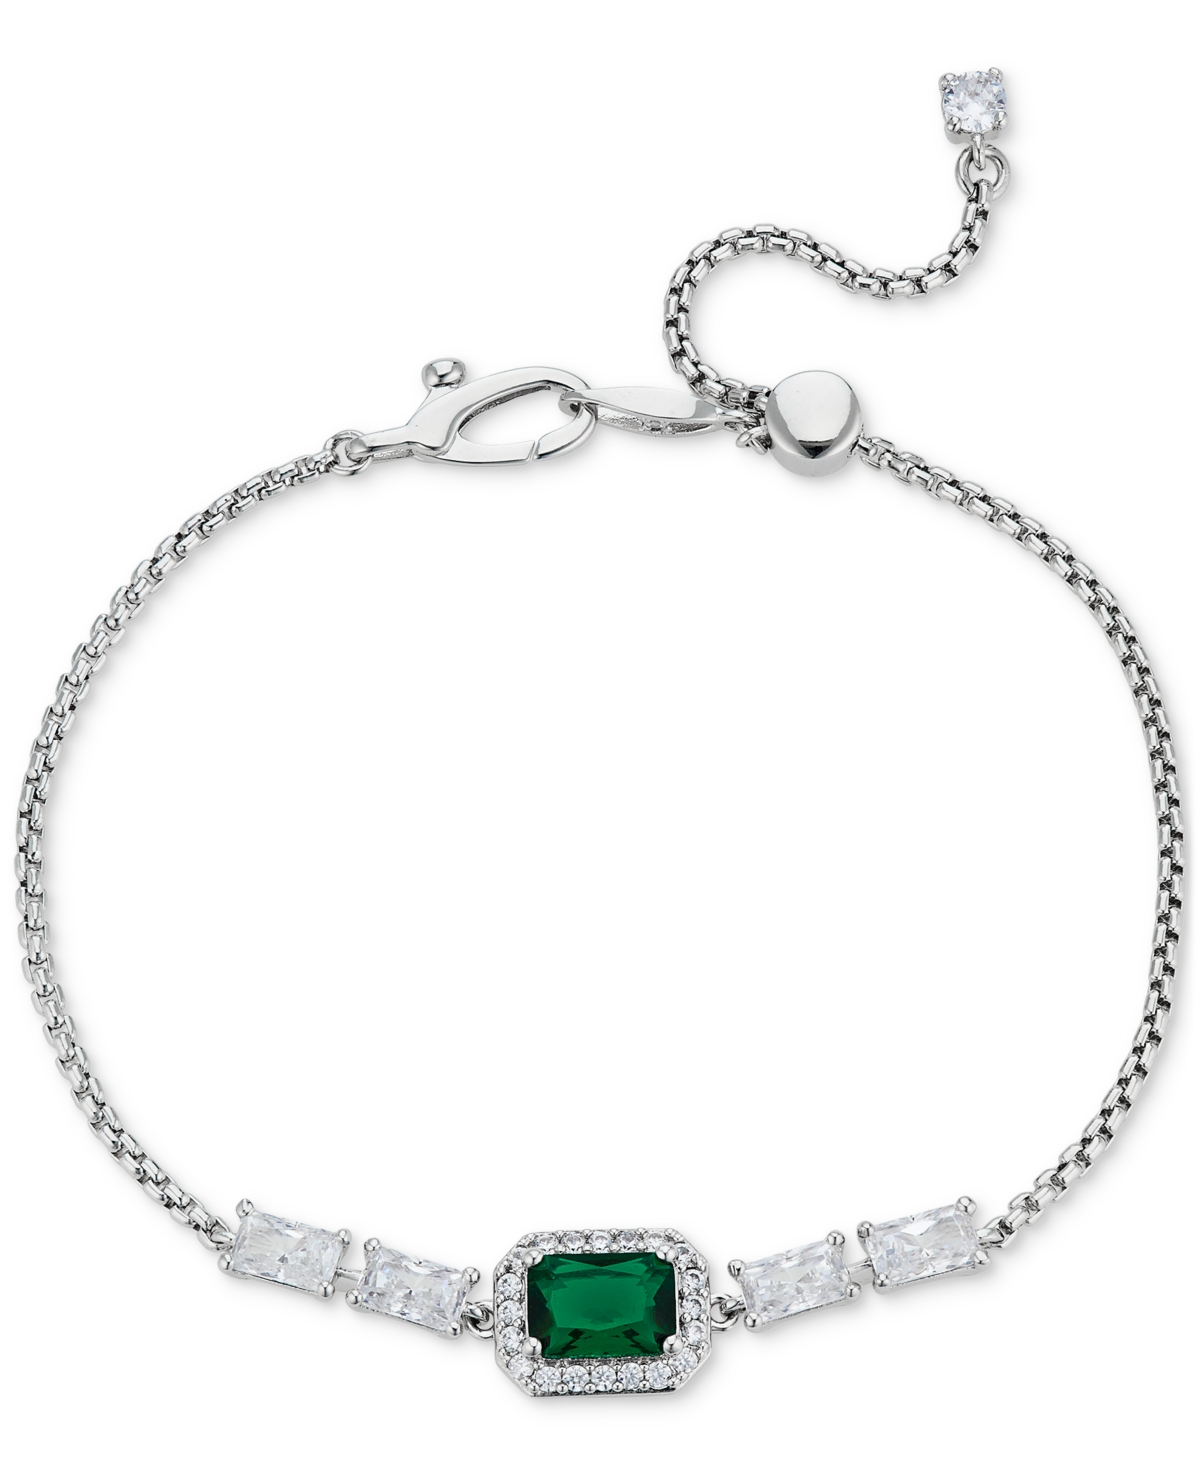 Crystal Adjustable Slider Bracelet - Green/Silver